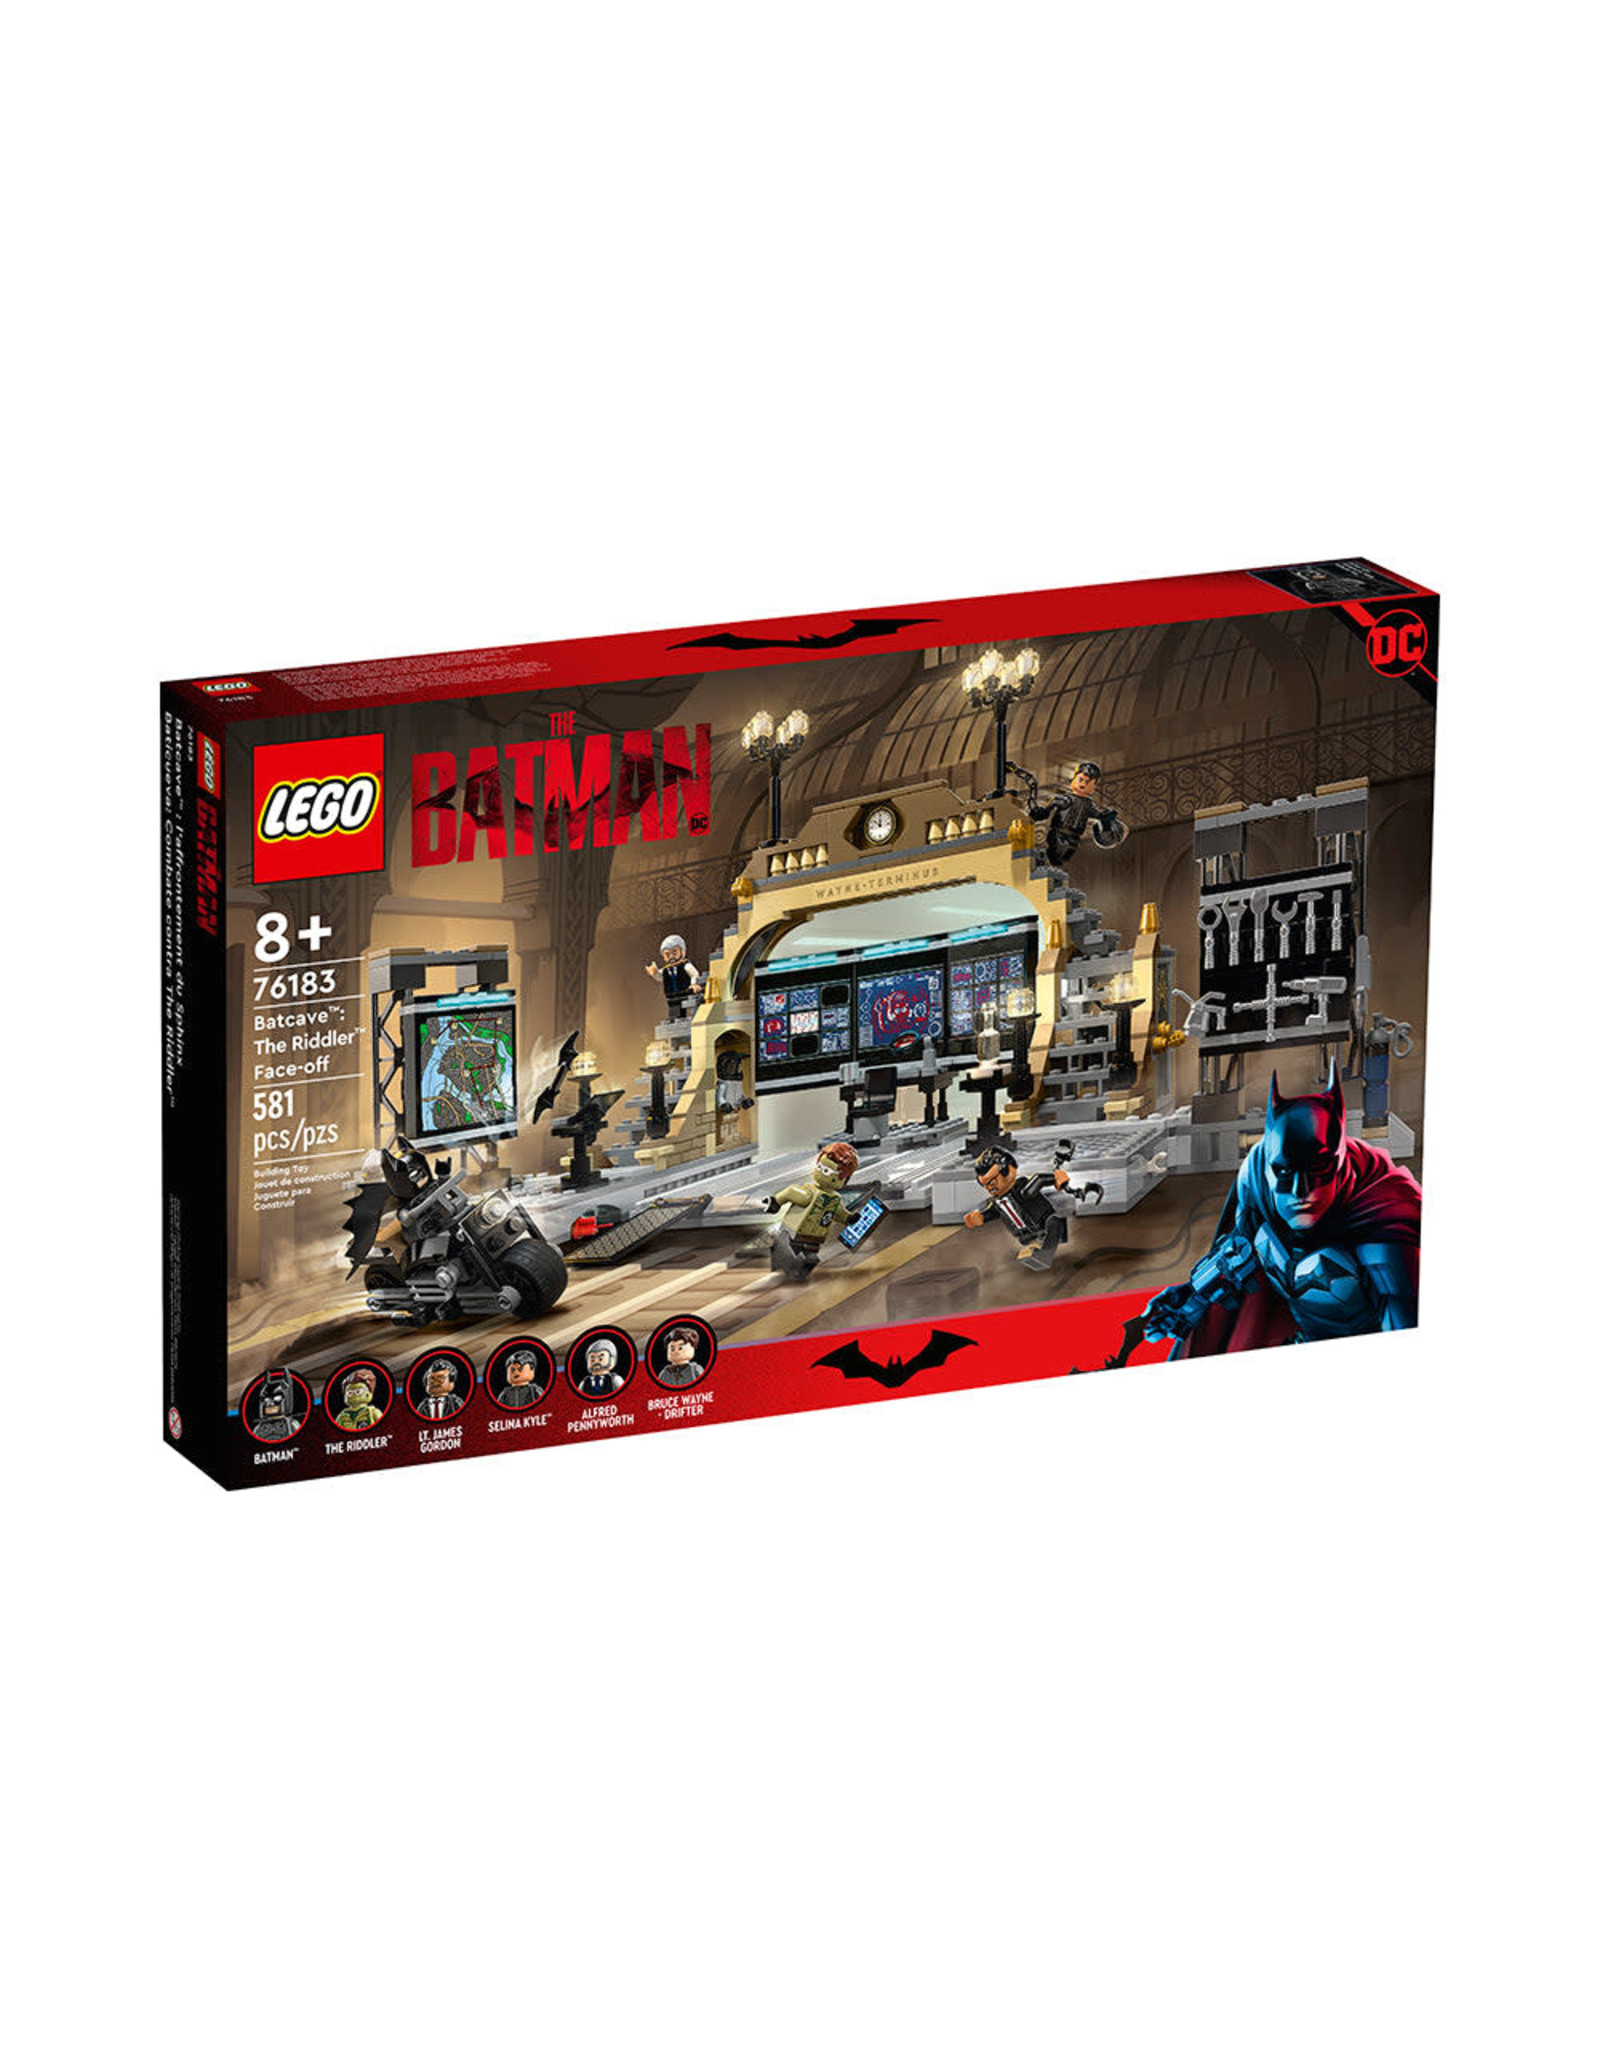 LEGO DC Batman Batcave: The Riddler Face-off 76183 Building Kit (581 Pieces)